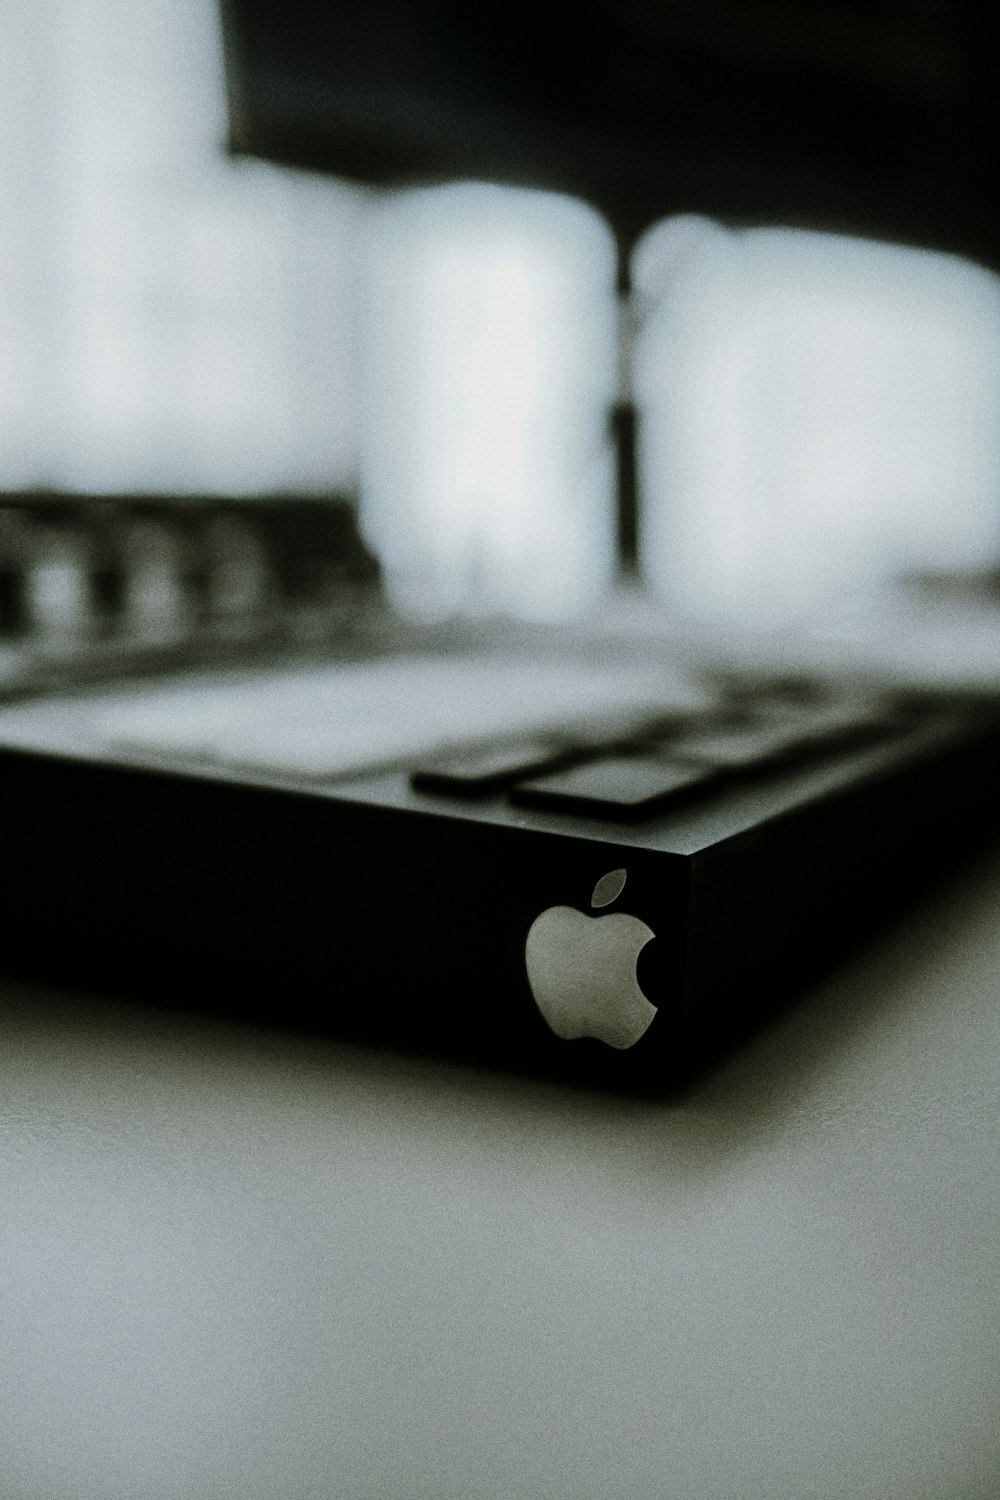 Ein Schwarz-Weiß-Foto eines Apple-Computers